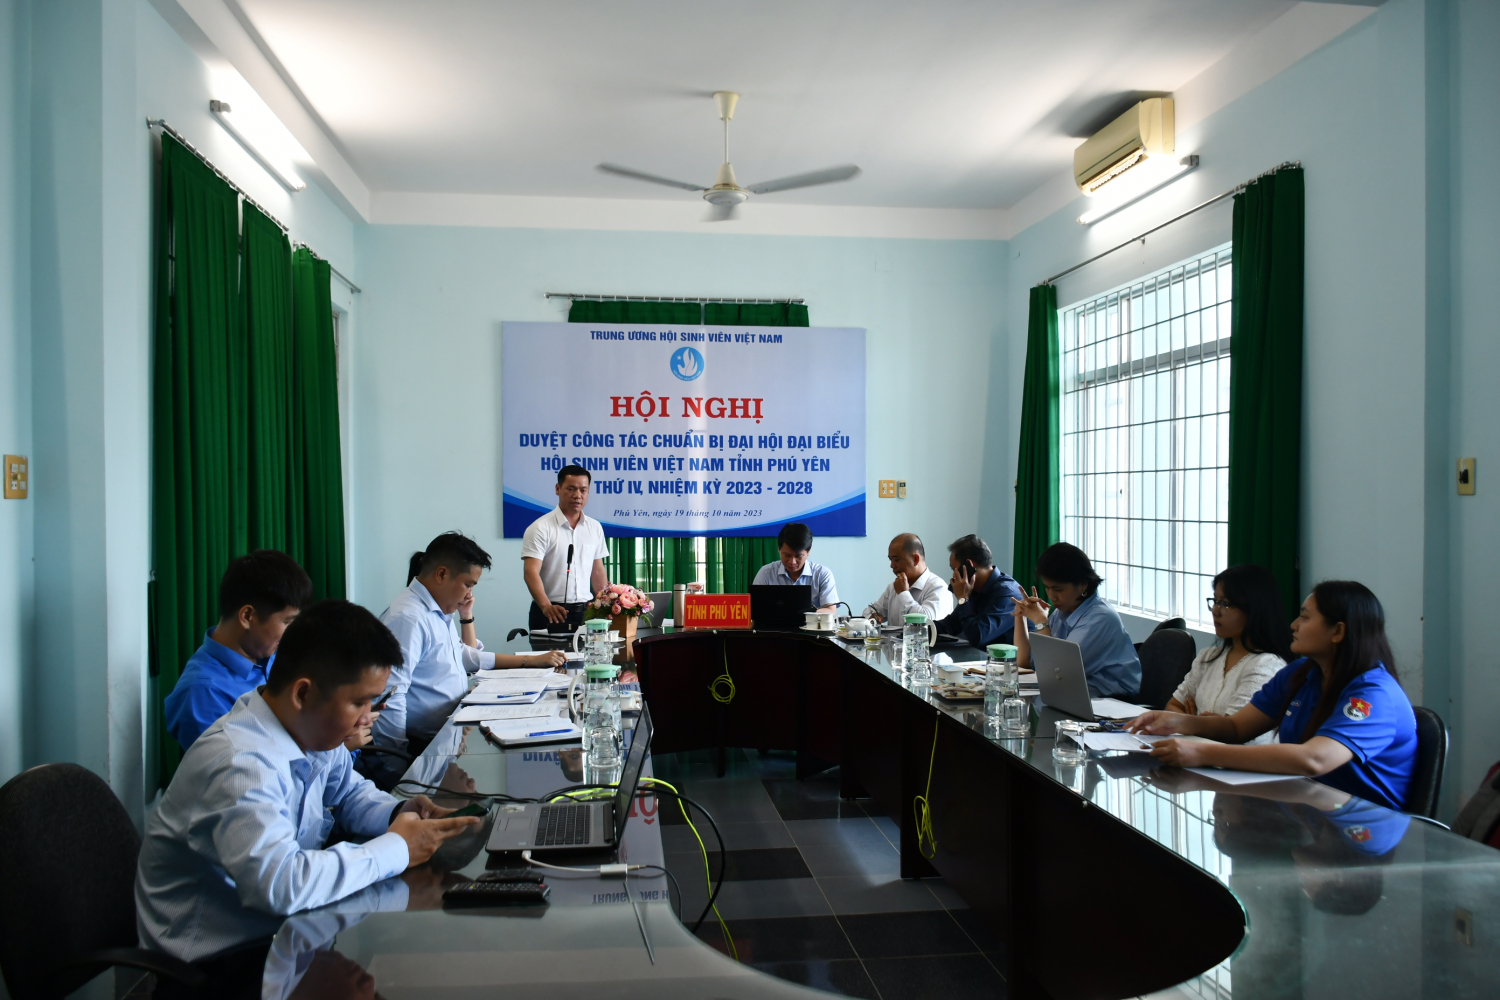 Quang cảnh Hội nghị trực tuyến duyệt công tác chuẩn bị Đại hội đại biểu Hội Sinh viên tỉnh Phú Yên lần thứ IV, nhiệm kỳ 2023 - 2028.